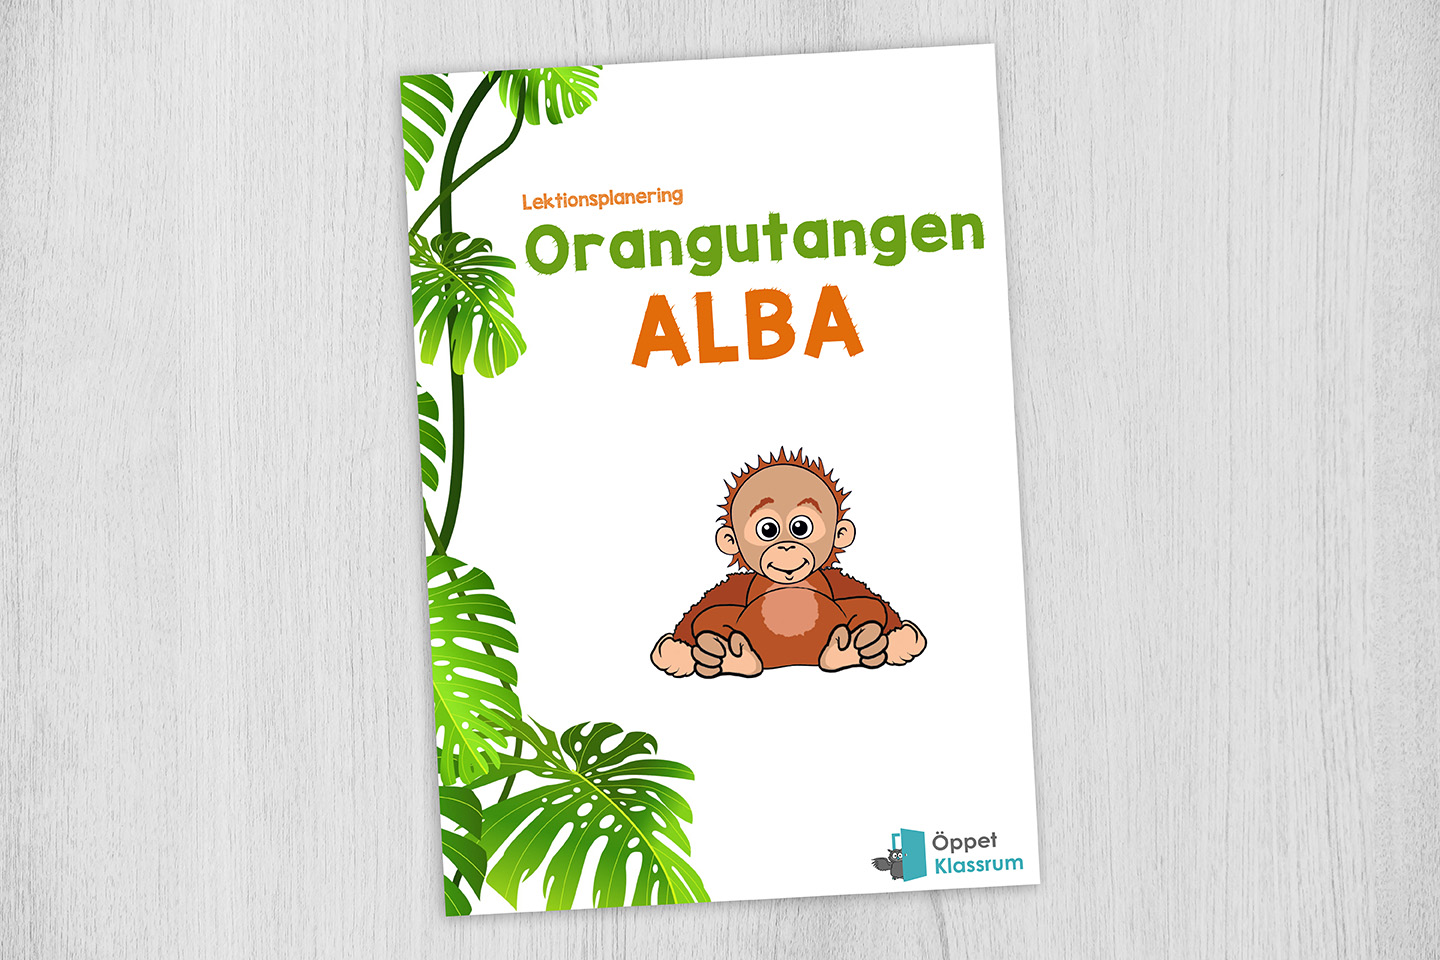 Orangutangen Alba